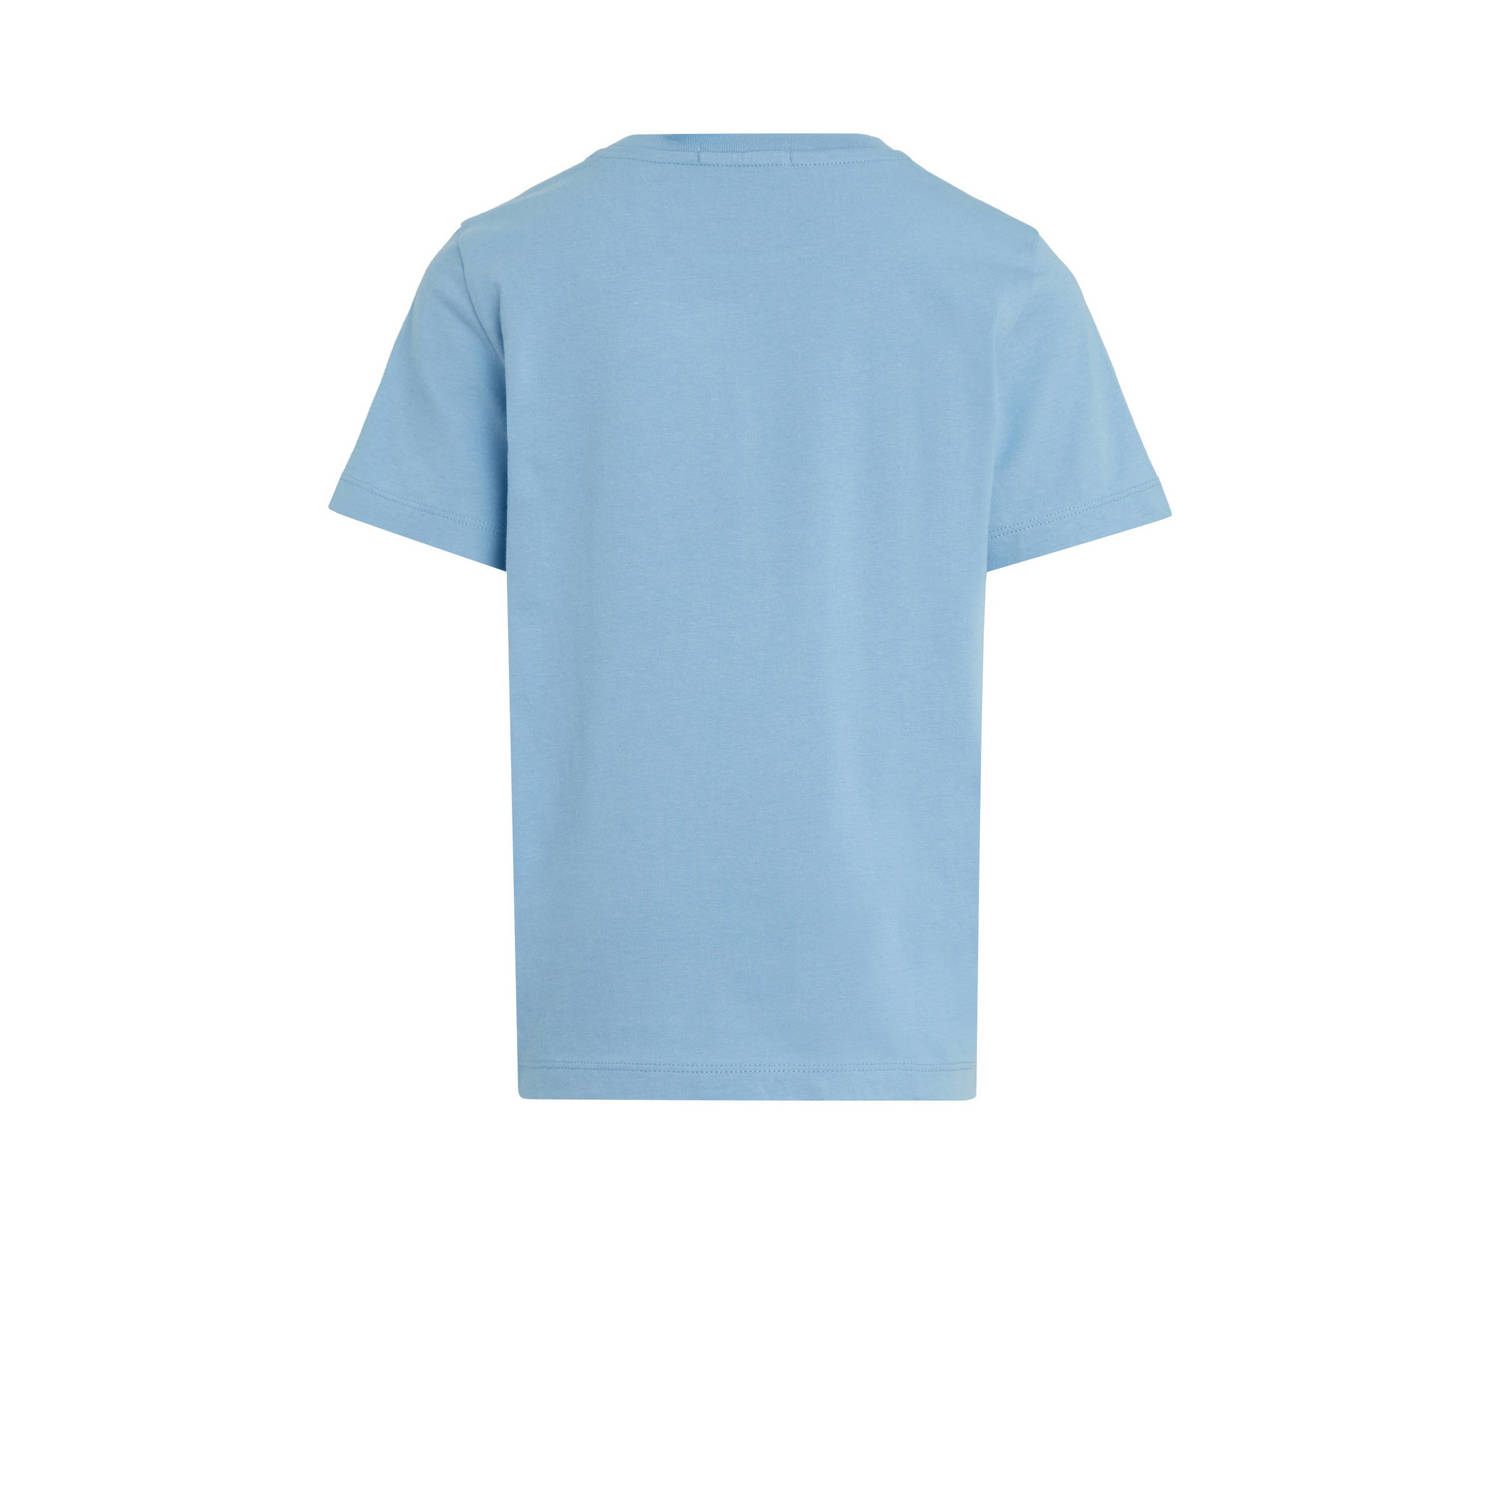 Calvin Klein T-shirt babyblauw